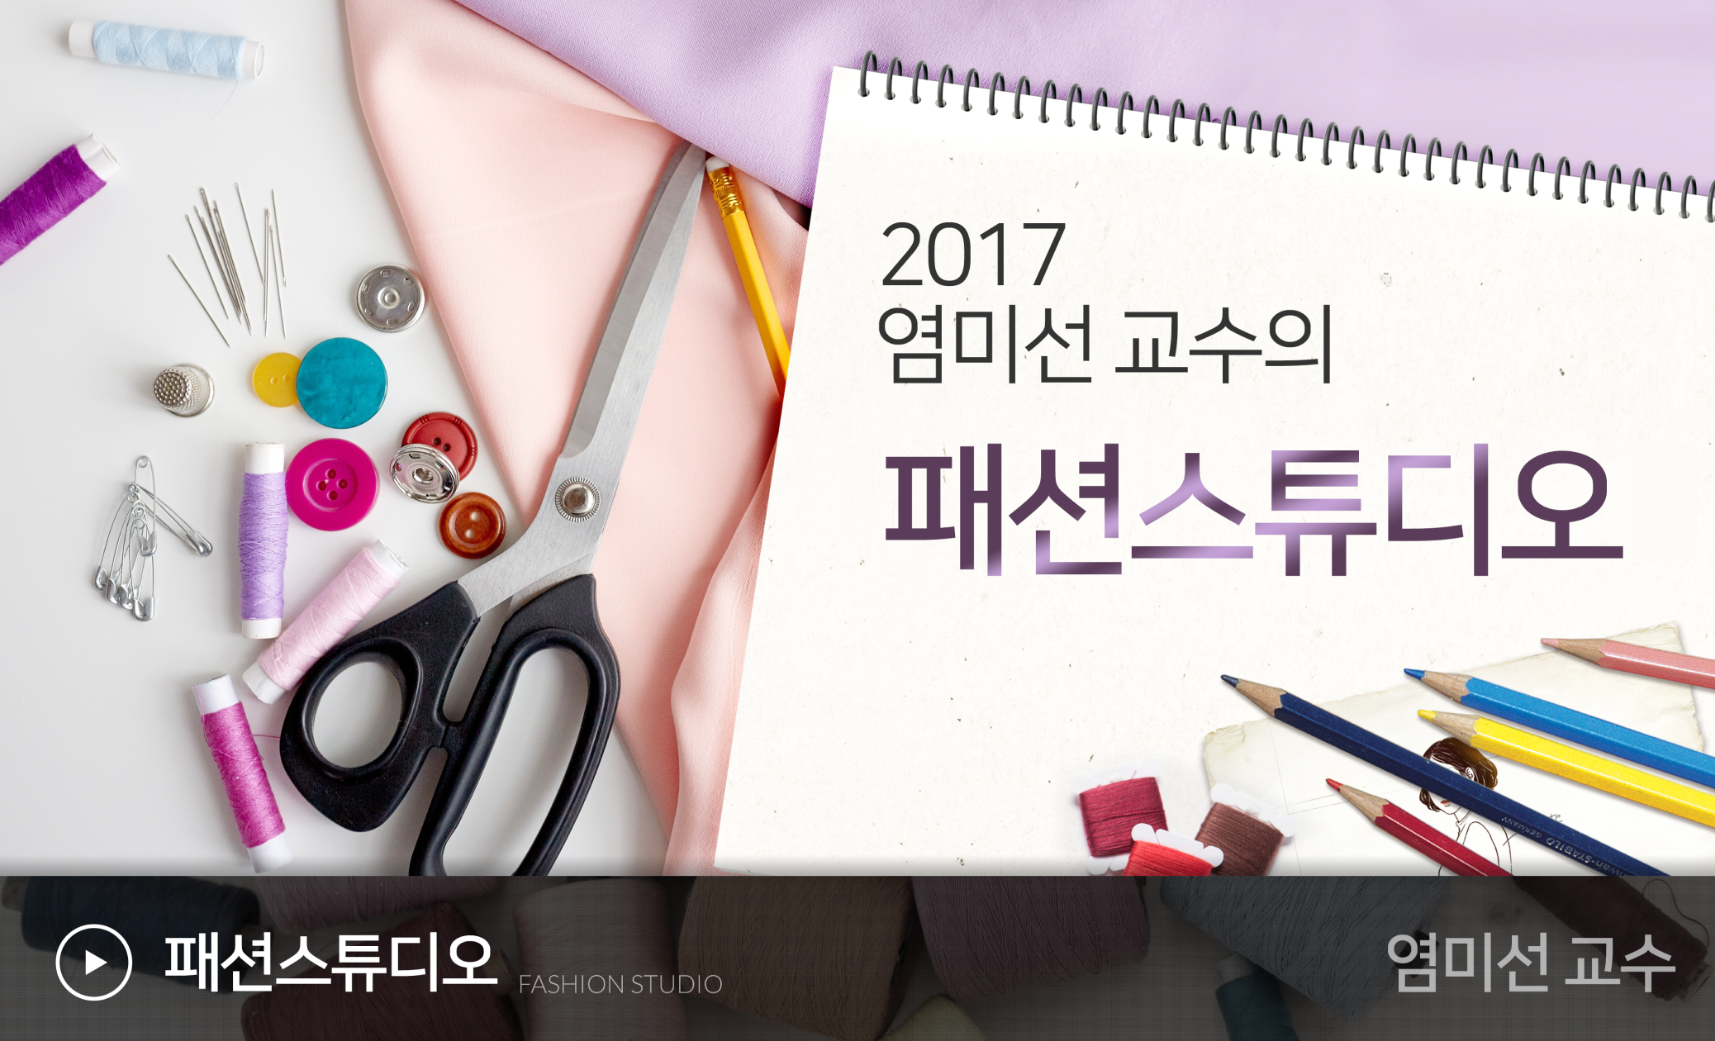 패션 스튜디오 개강일 2017-12-18 종강일 2018-01-21 강좌상태 종료